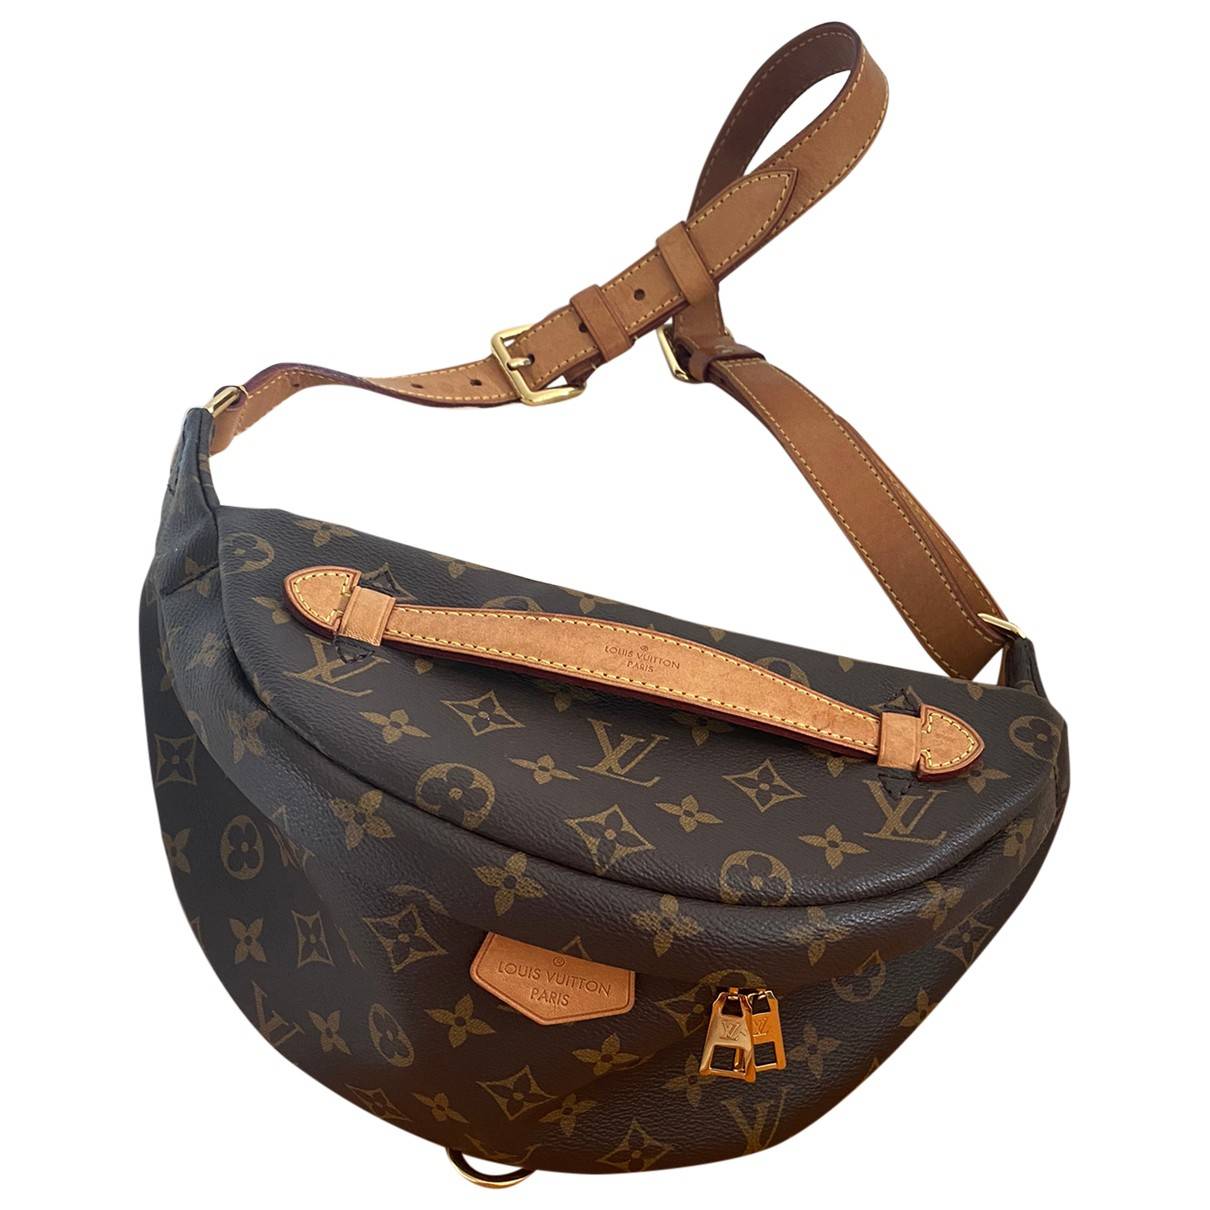 Bum bag / sac ceinture cloth handbag Louis Vuitton Brown in Cloth - 32347164